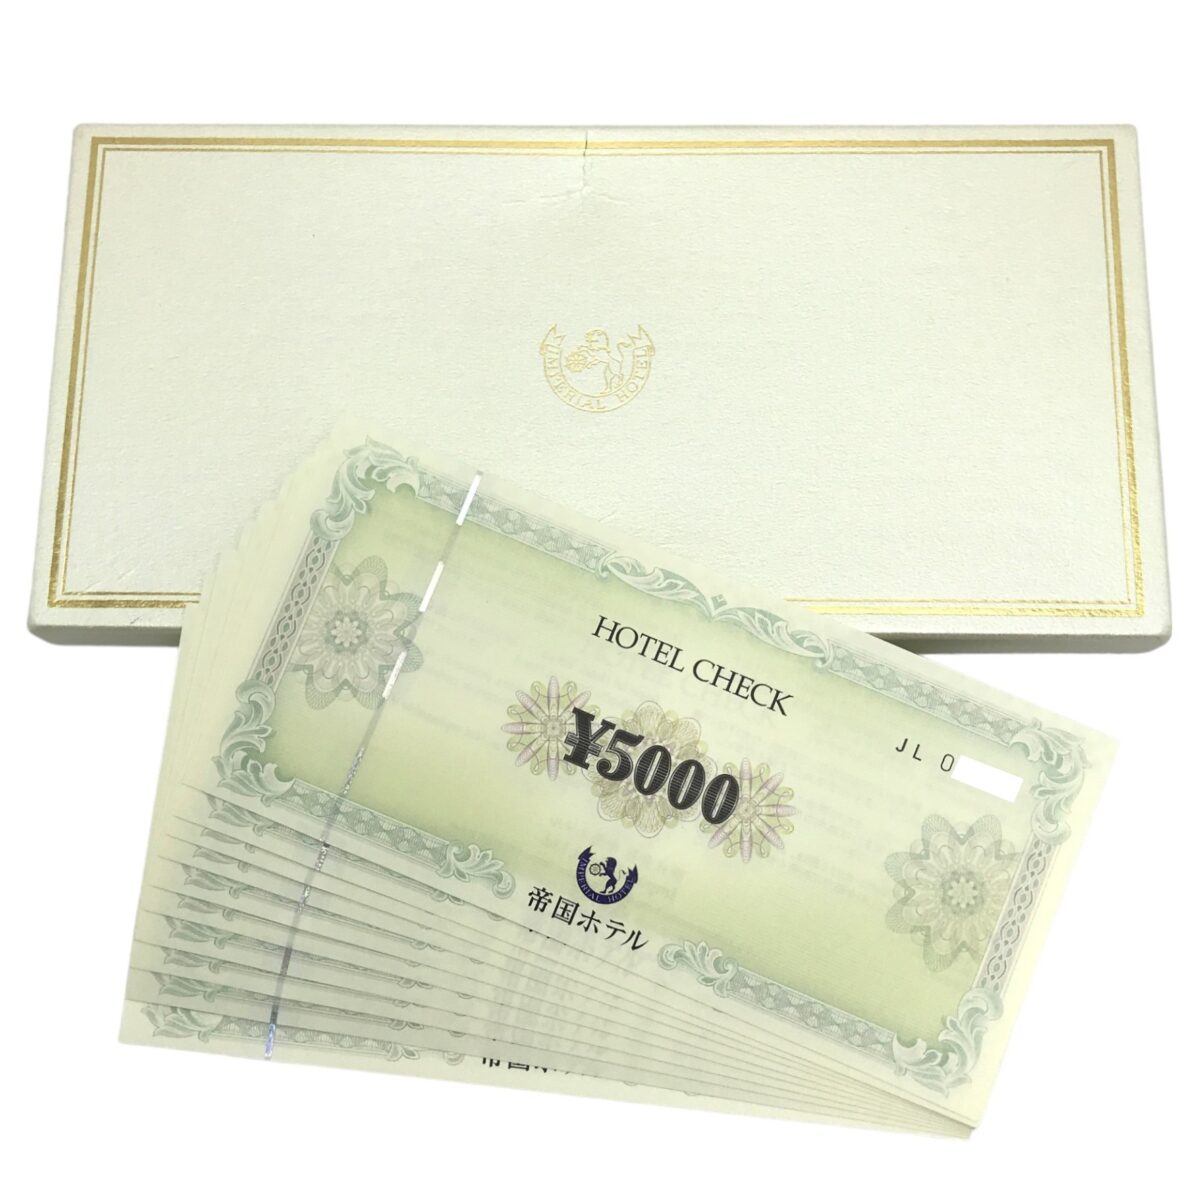 帝国ホテル ホテルチェック ギフト券 5000円×4枚 20000万円分 - ギフト券